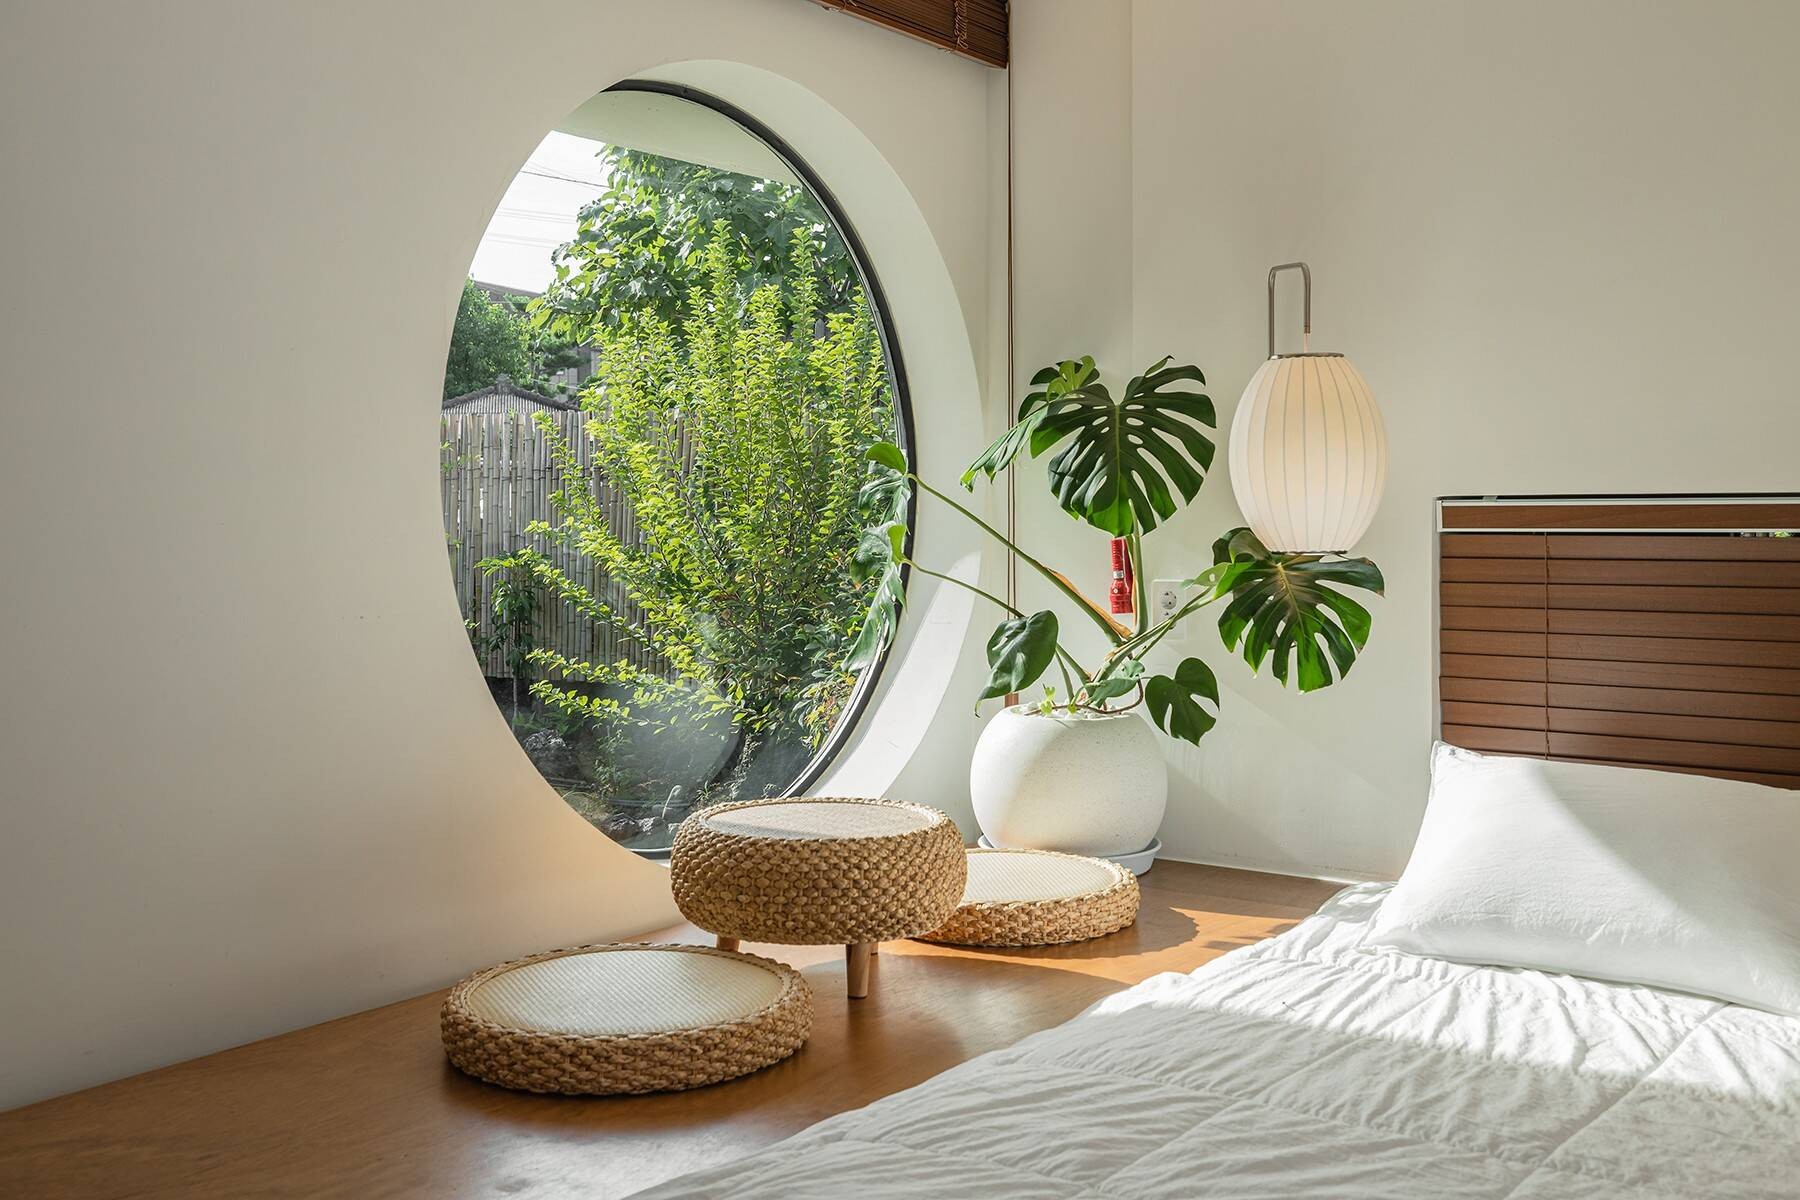 
Phòng ngủ đơn giản và ấm cúng với cây xanh giúp cho không gian thêm tươi mới
